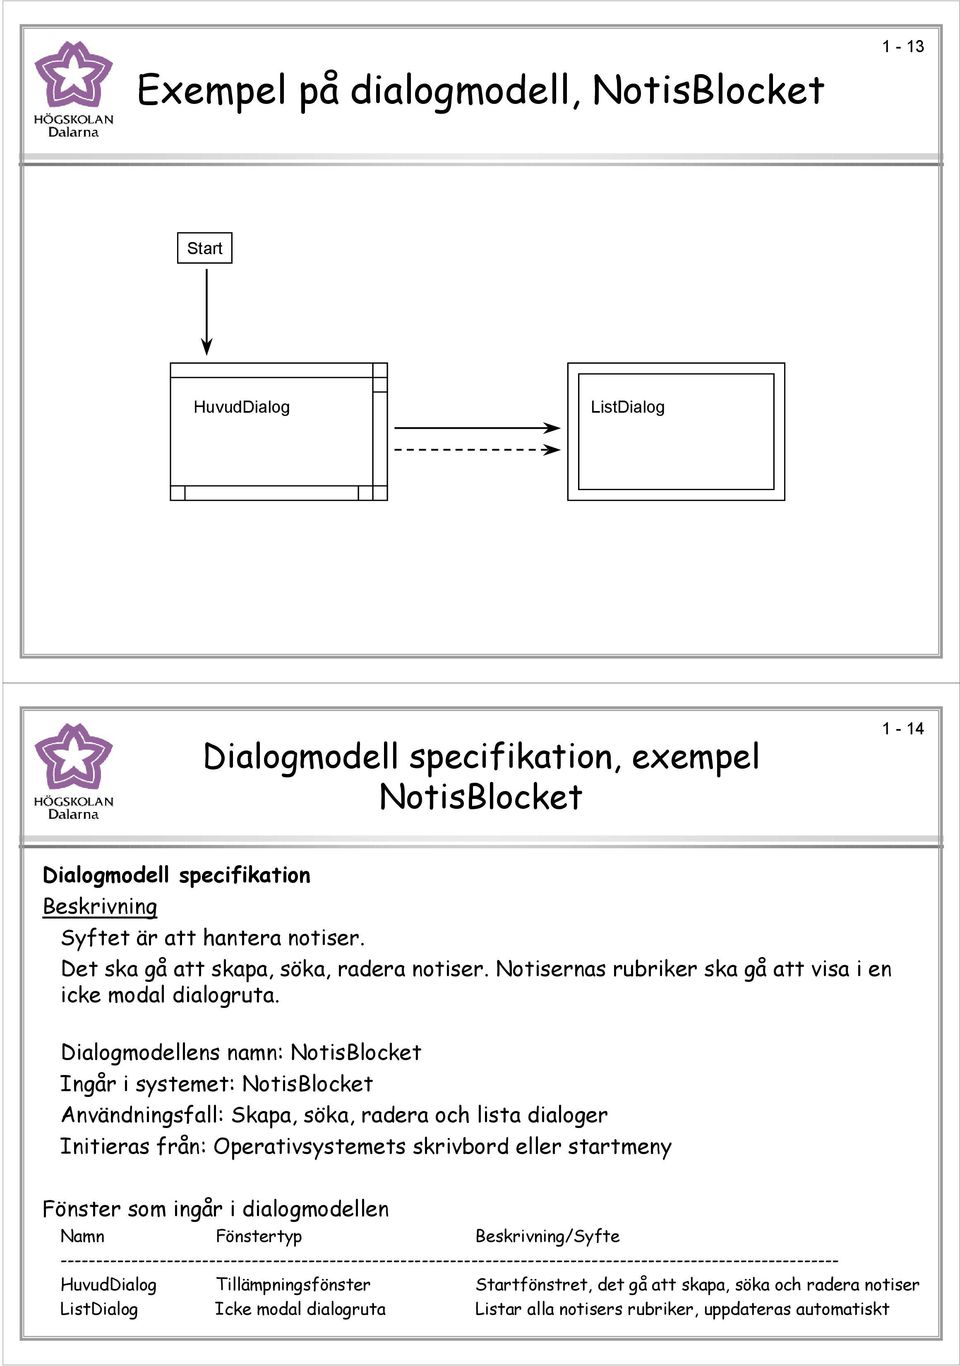 Dialogmodellens namn: NotisBlocket Ingår i systemet: NotisBlocket Användningsfall: Skapa, söka, radera och lista dialoger Initieras från: Operativsystemets skrivbord eller startmeny Fönster som ingår